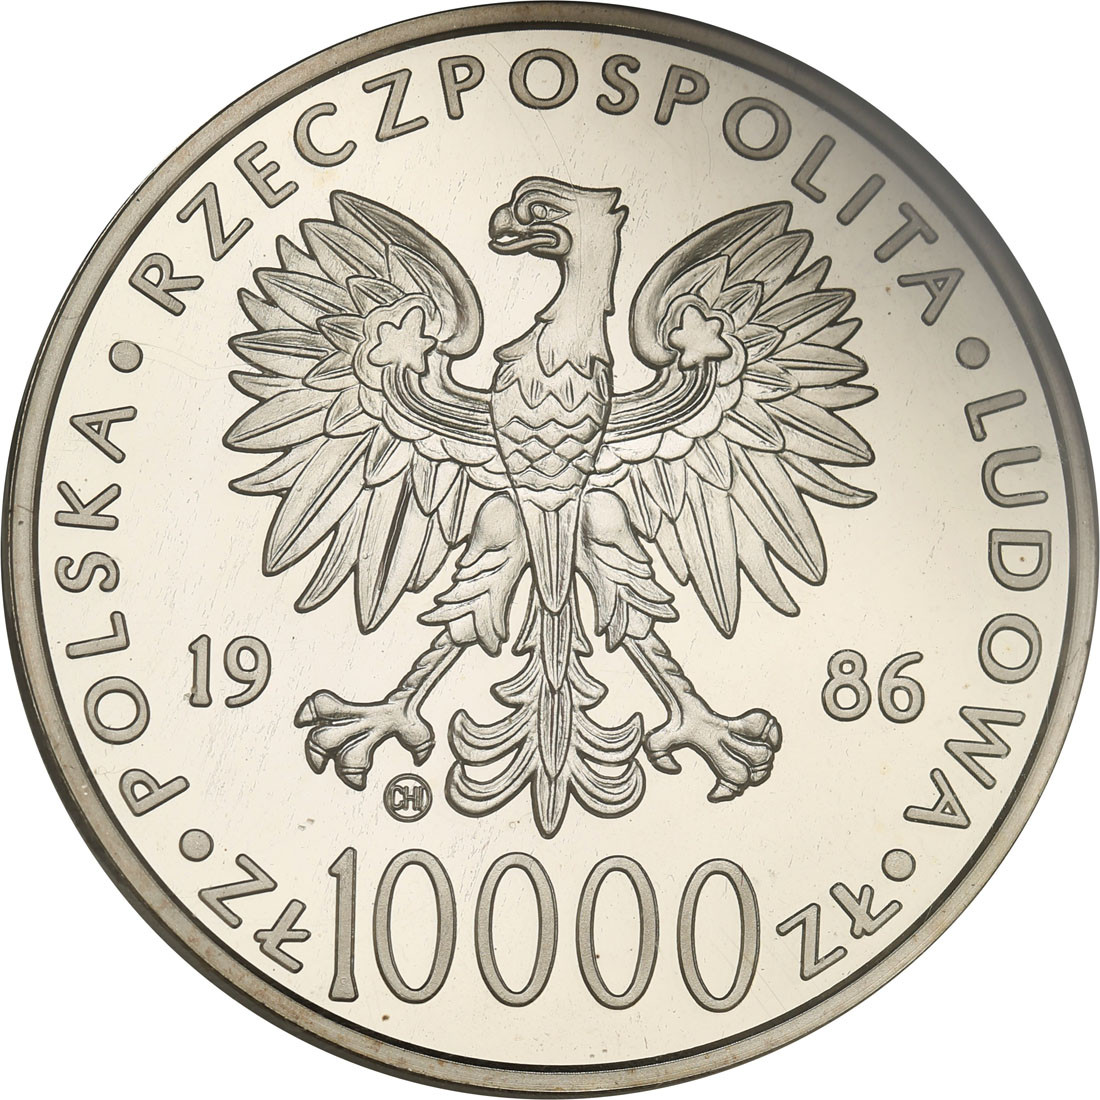 PRL. 10.000 złotych 1986 Jan Paweł II, stempel lustrzany, b. niski nakład - RZADKOŚĆ